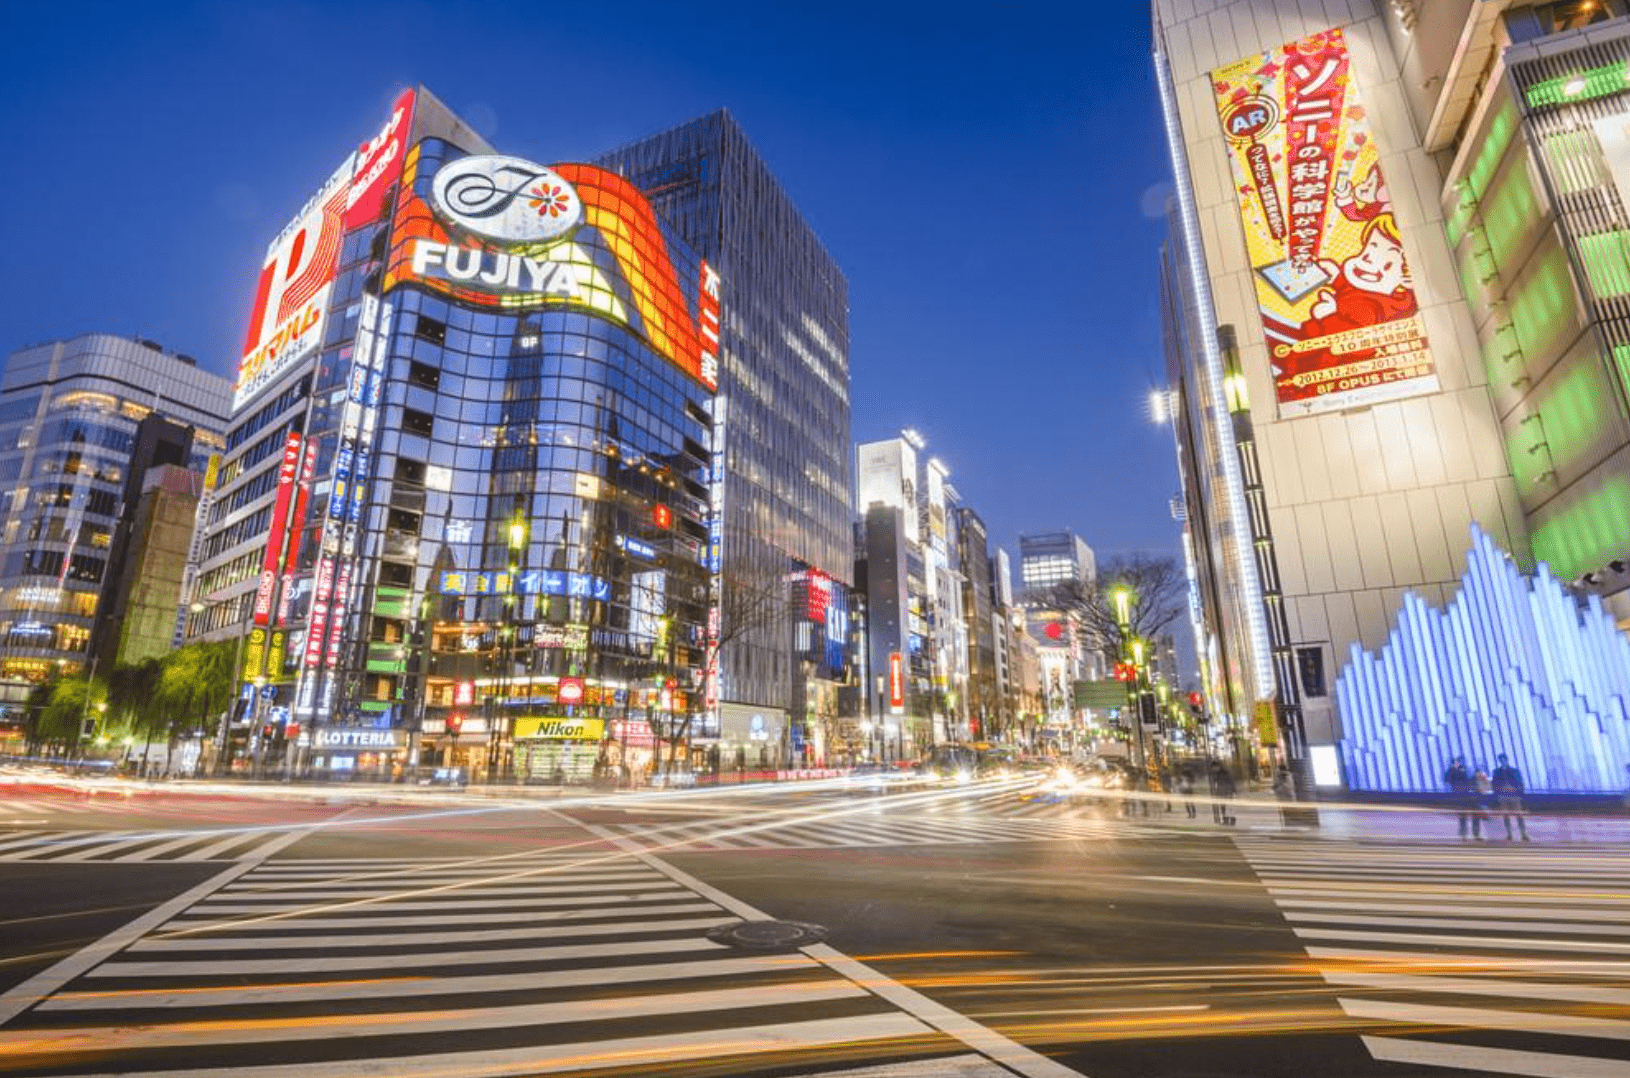 日本银座考察:这里汇聚着世界各地的名牌商品